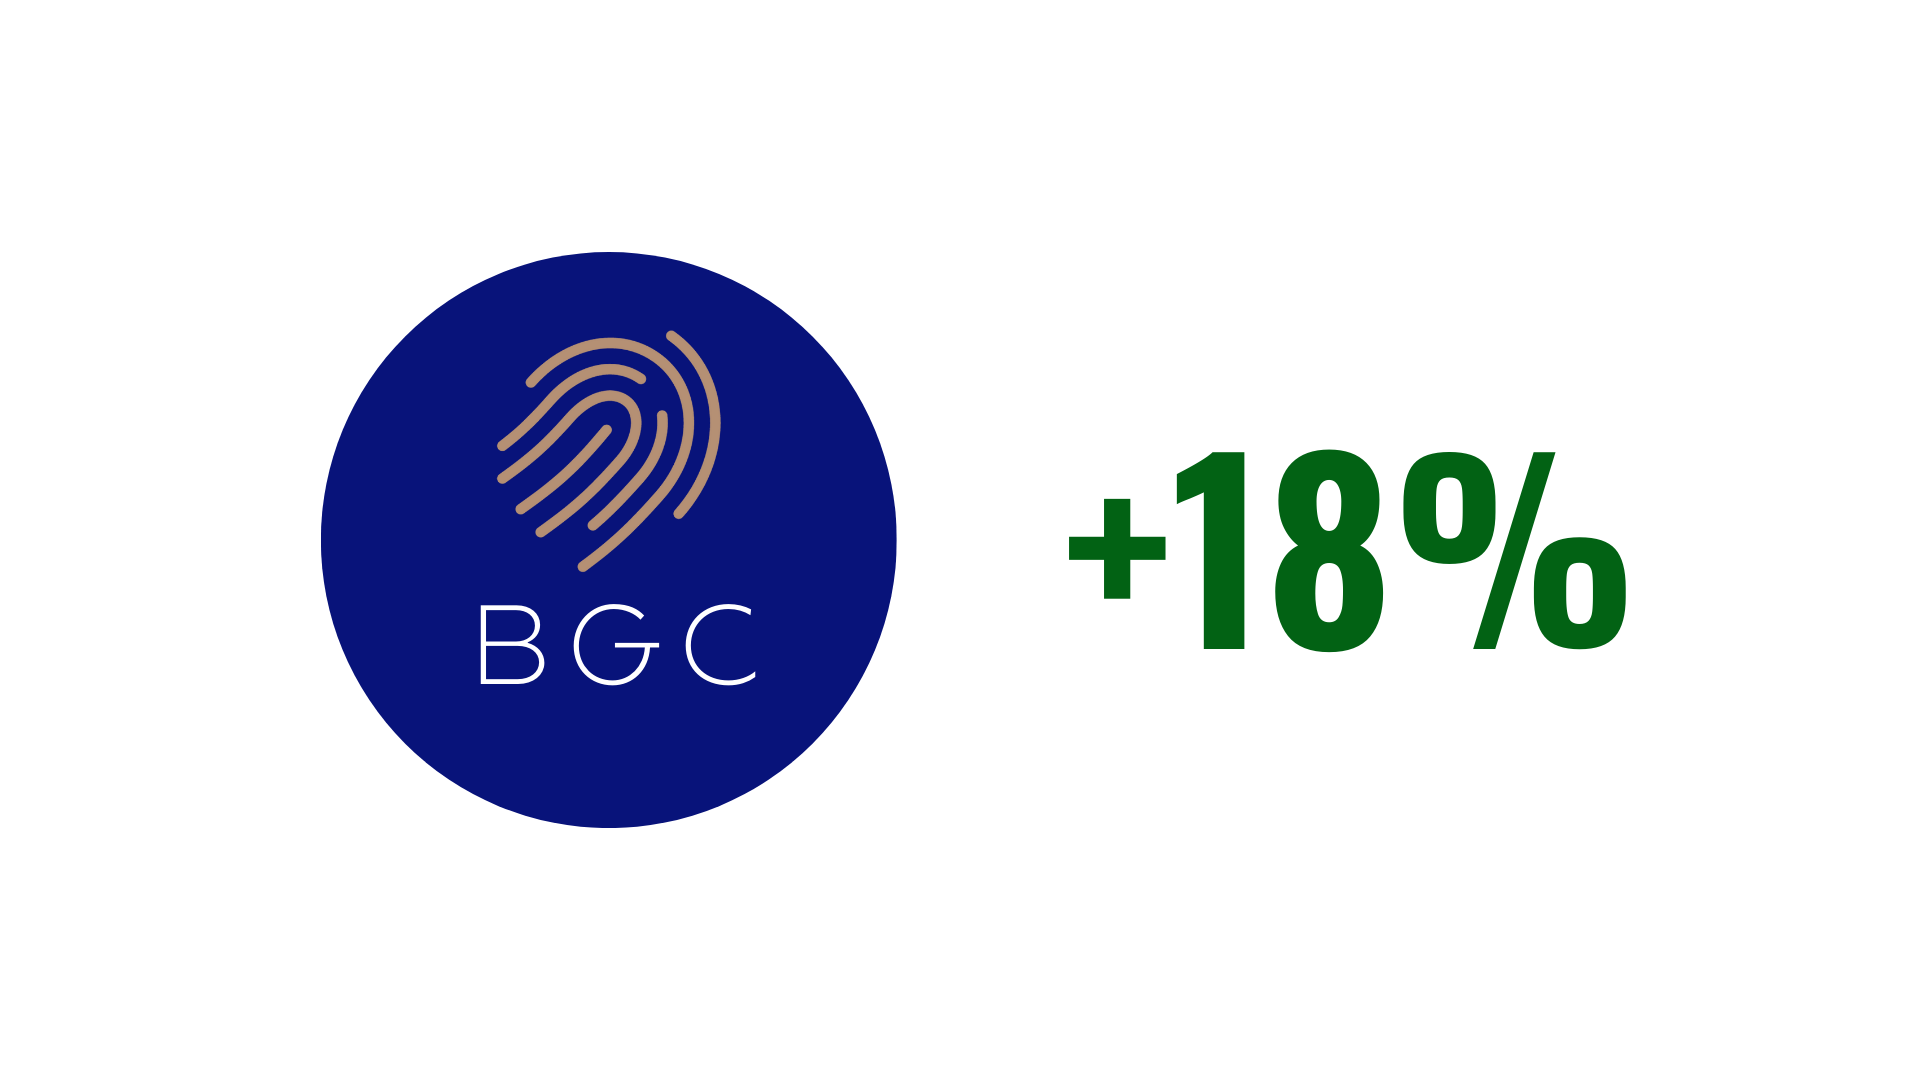 رشد 18 درصدی سبد BGC در ماه اخیر با کمترین پذیرش ریسک